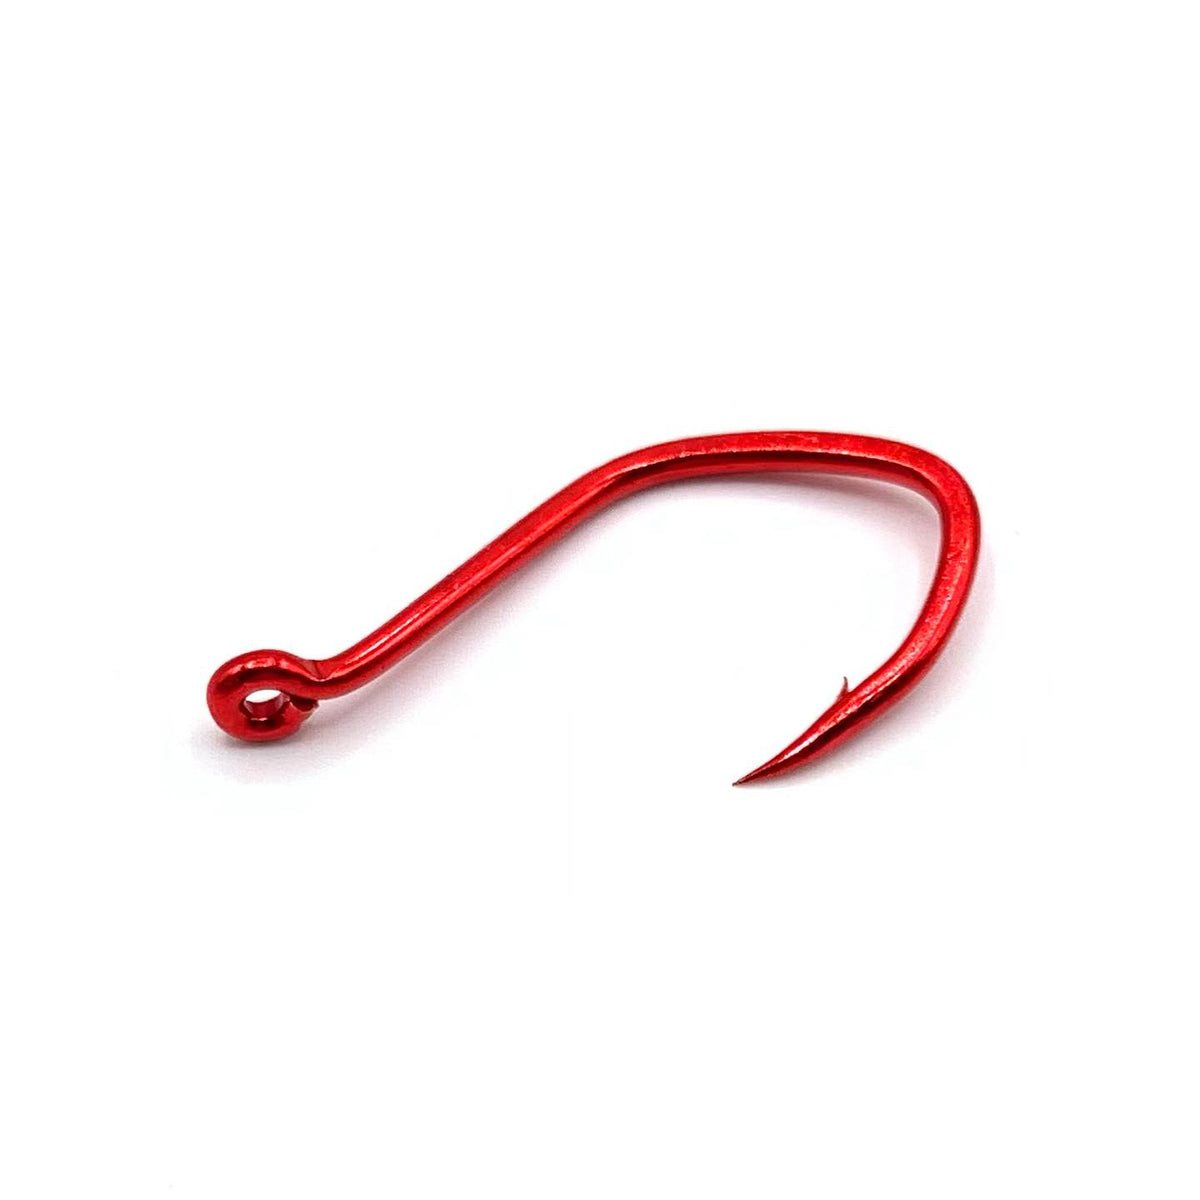 Matzuo Aberdeen Sickle Hooks, Red Chrome, 25-pk